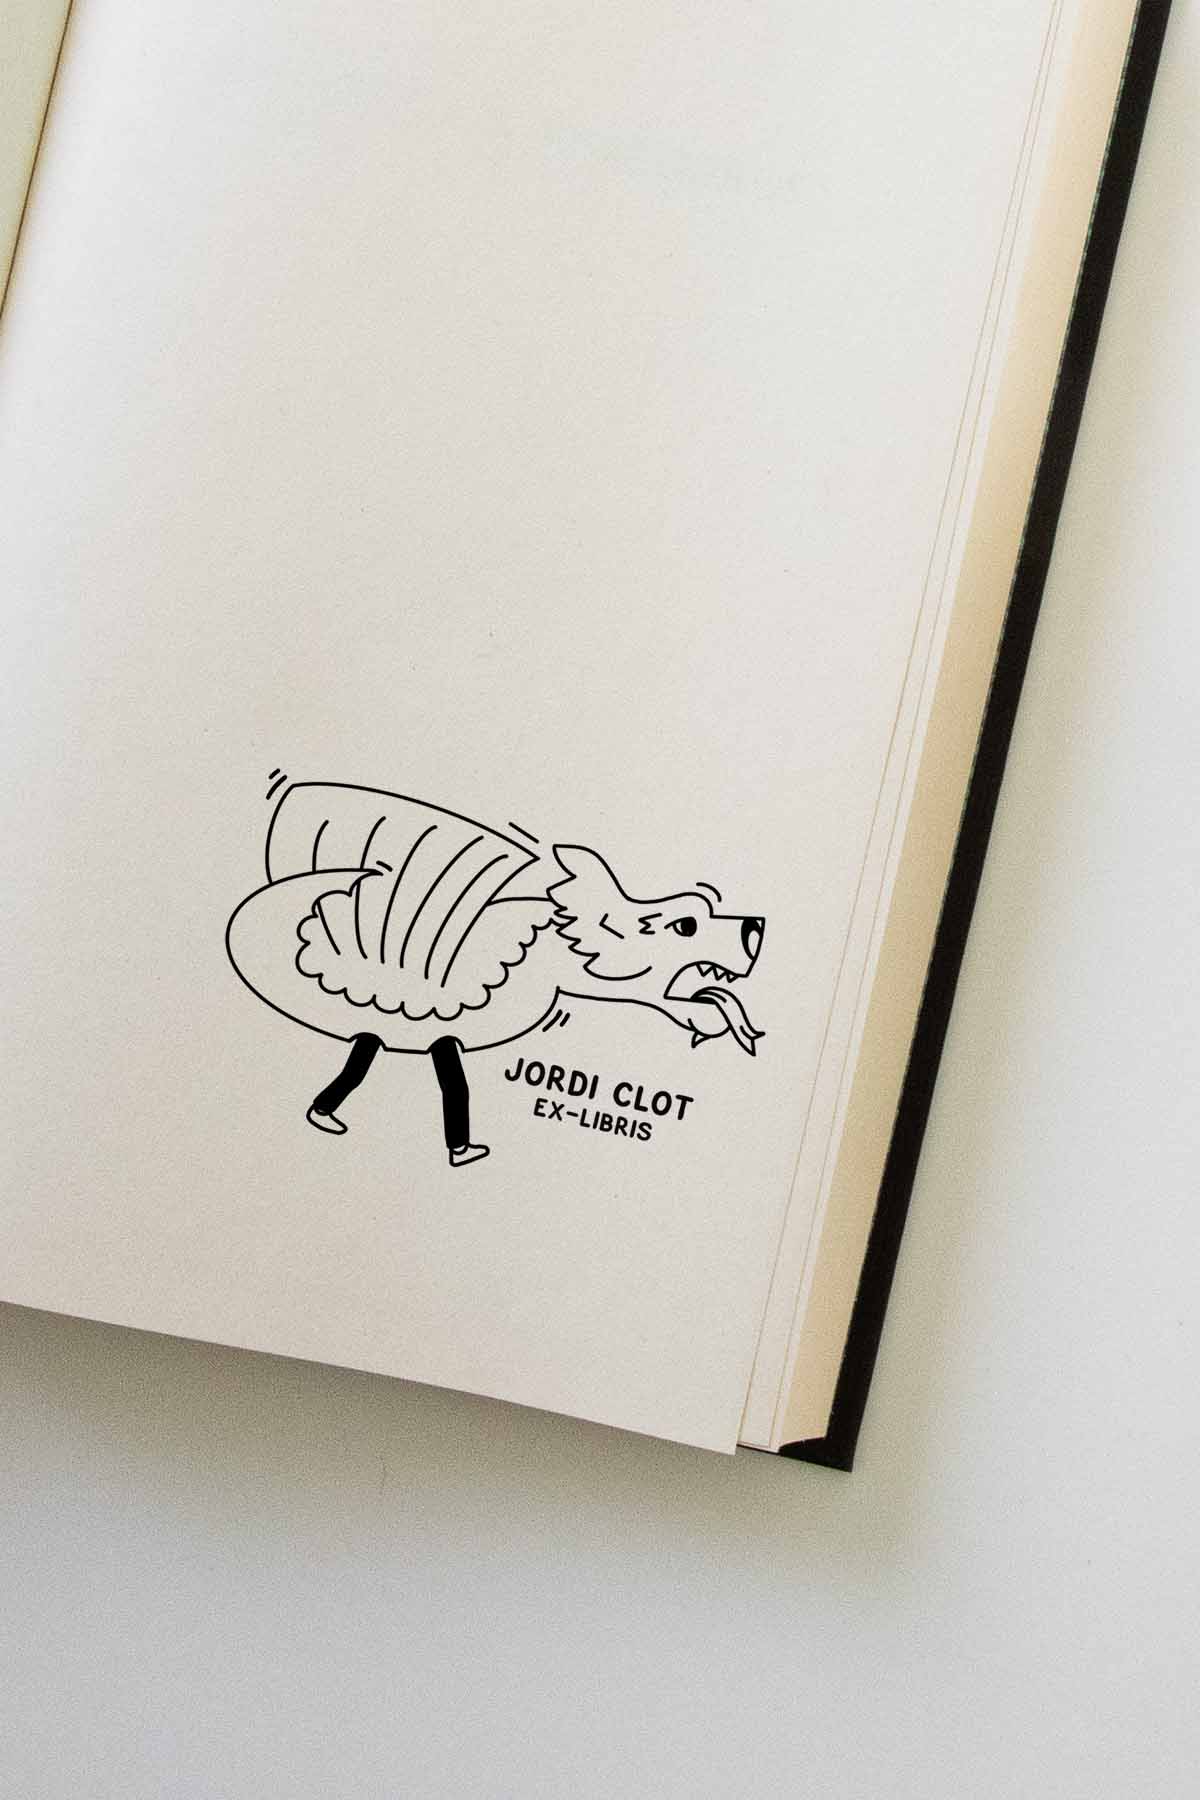 Portadilla de libro estampada con sello ex libris de un dragón del folclore catalán